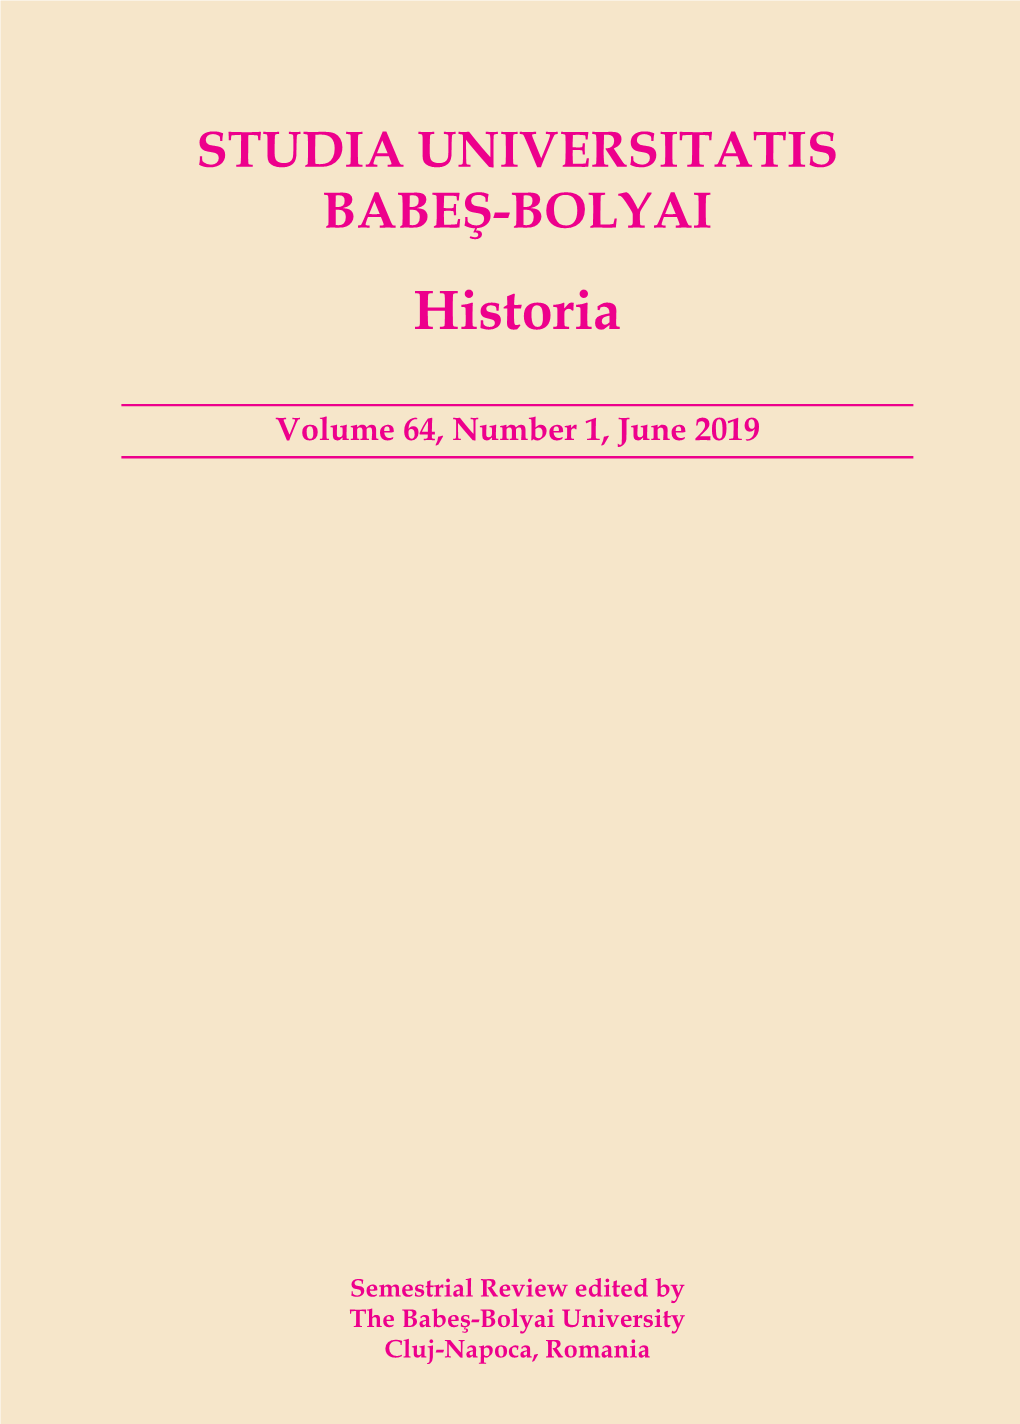 Historia Volume 64, Number 1, June 2019 STUDIA UNIVERSITATIS BABEŞ-BOLYAI Contents